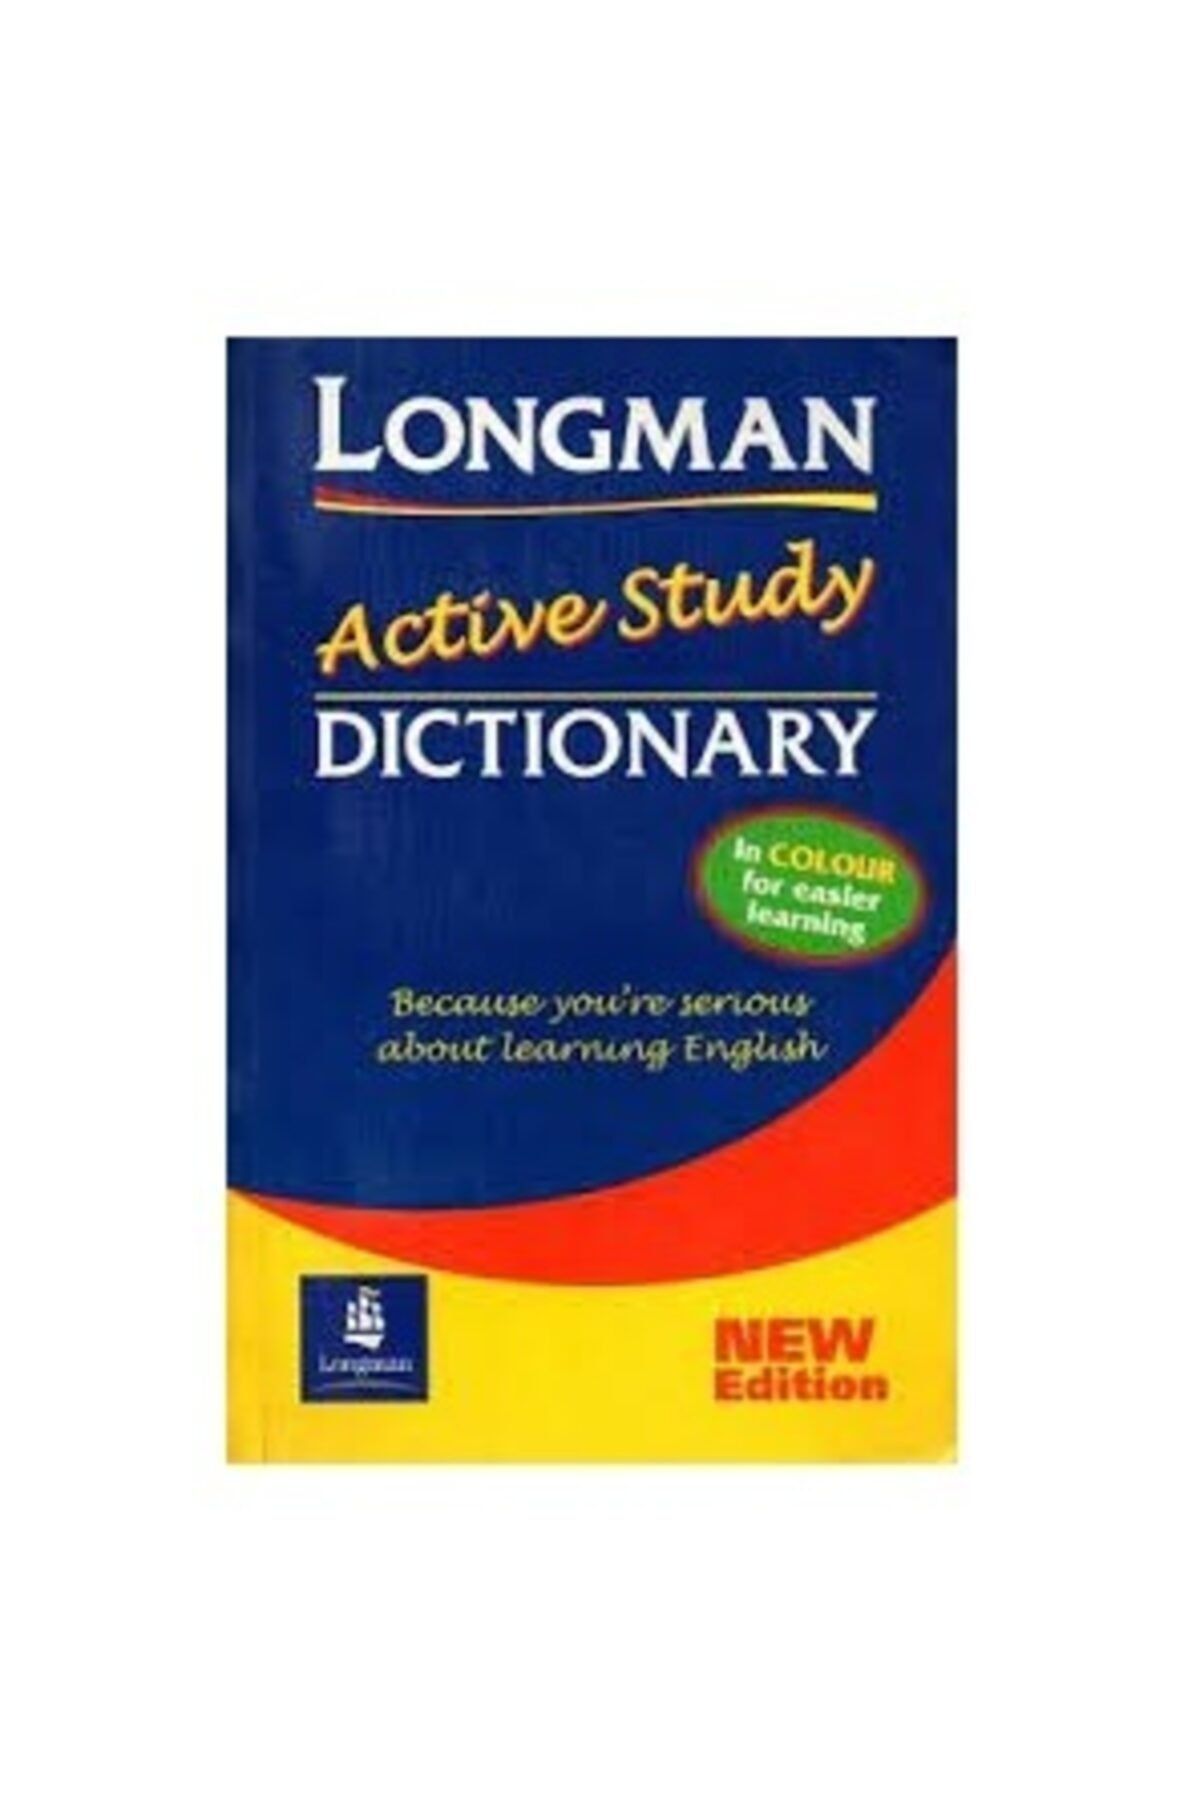 Edition　Learning　Study　New　Dictionary　Fiyatı,　Longman　Longman　For　Easier　Yorumları　Yayınları　Active　Colour　In　Trendyol